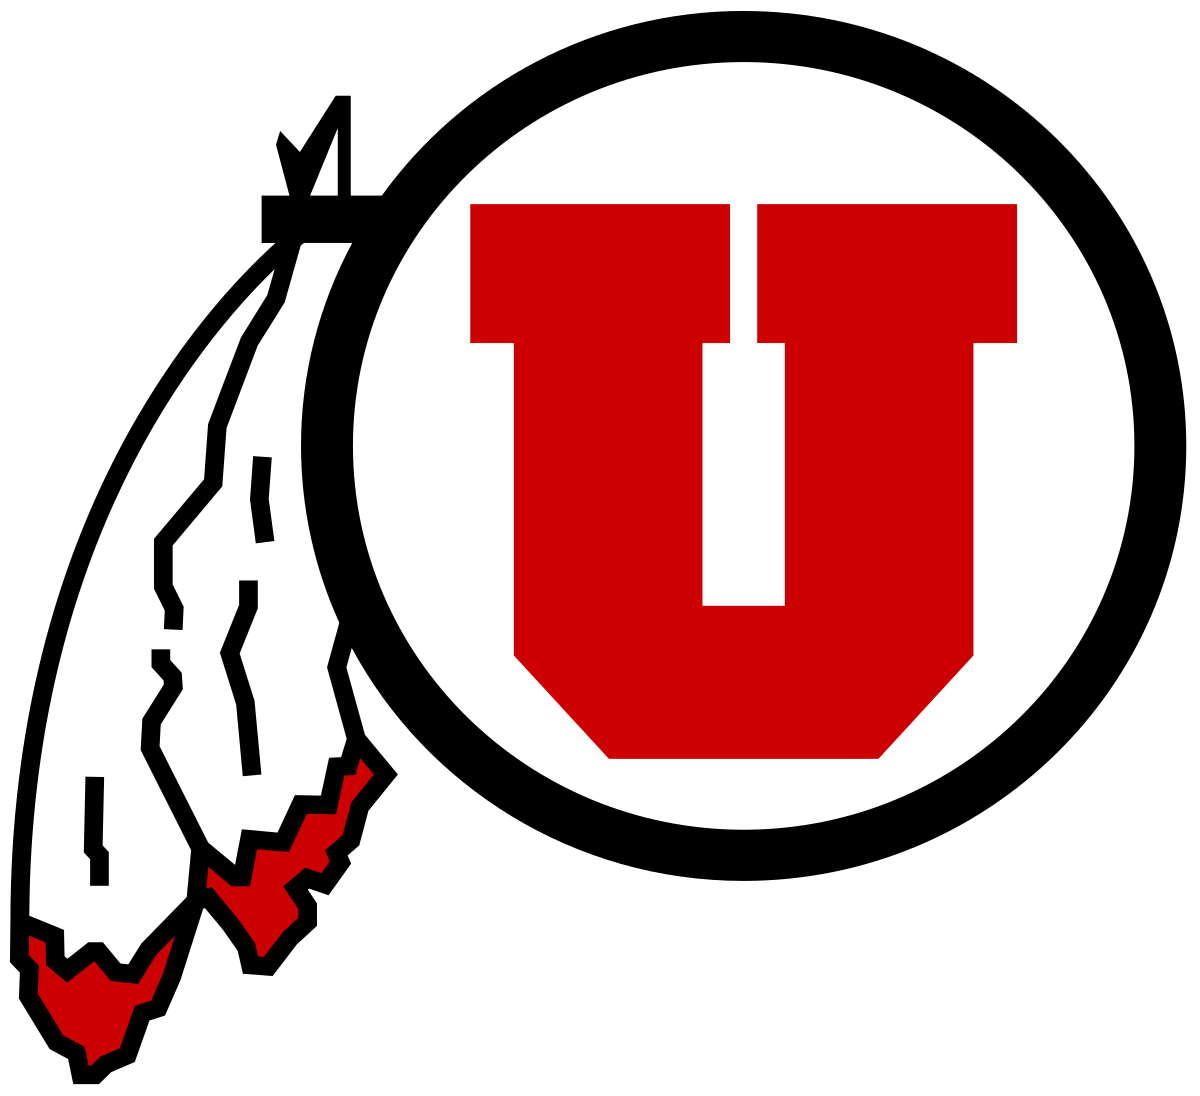 The Utes Logo - Utah Utes